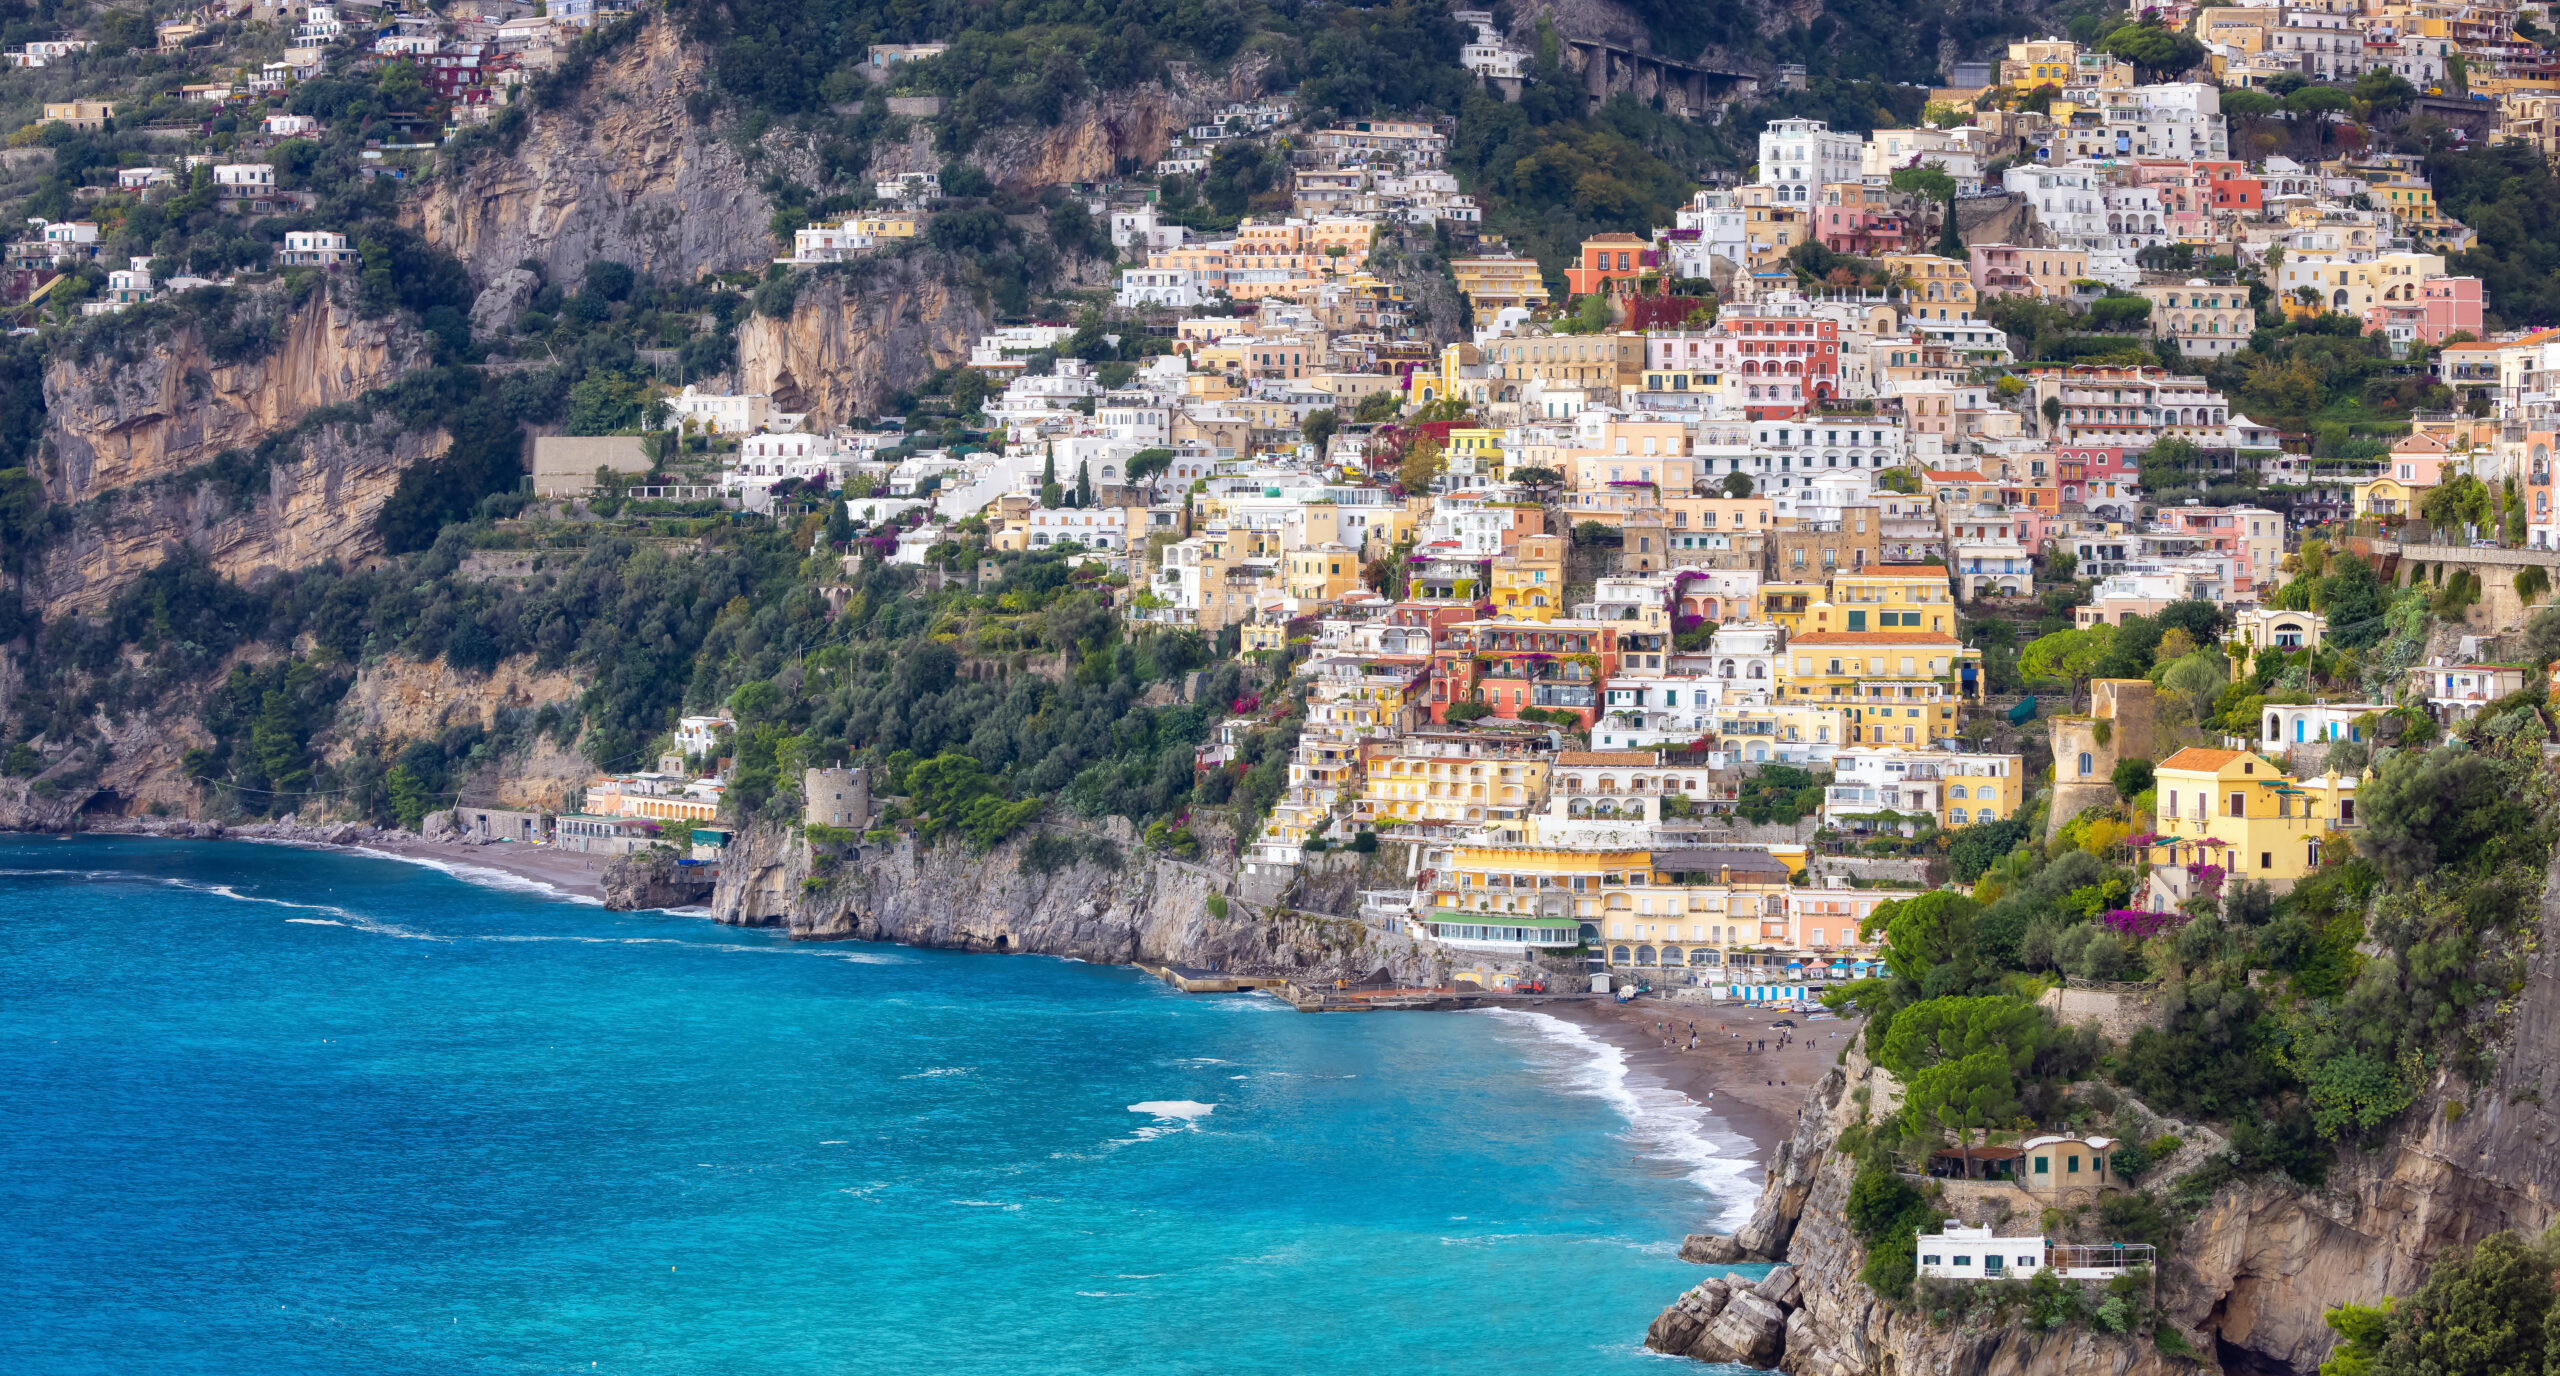 Erleben Sie die atemberaubende Schönheit von Positano an der atemberaubenden Amalfiküste in Italien.